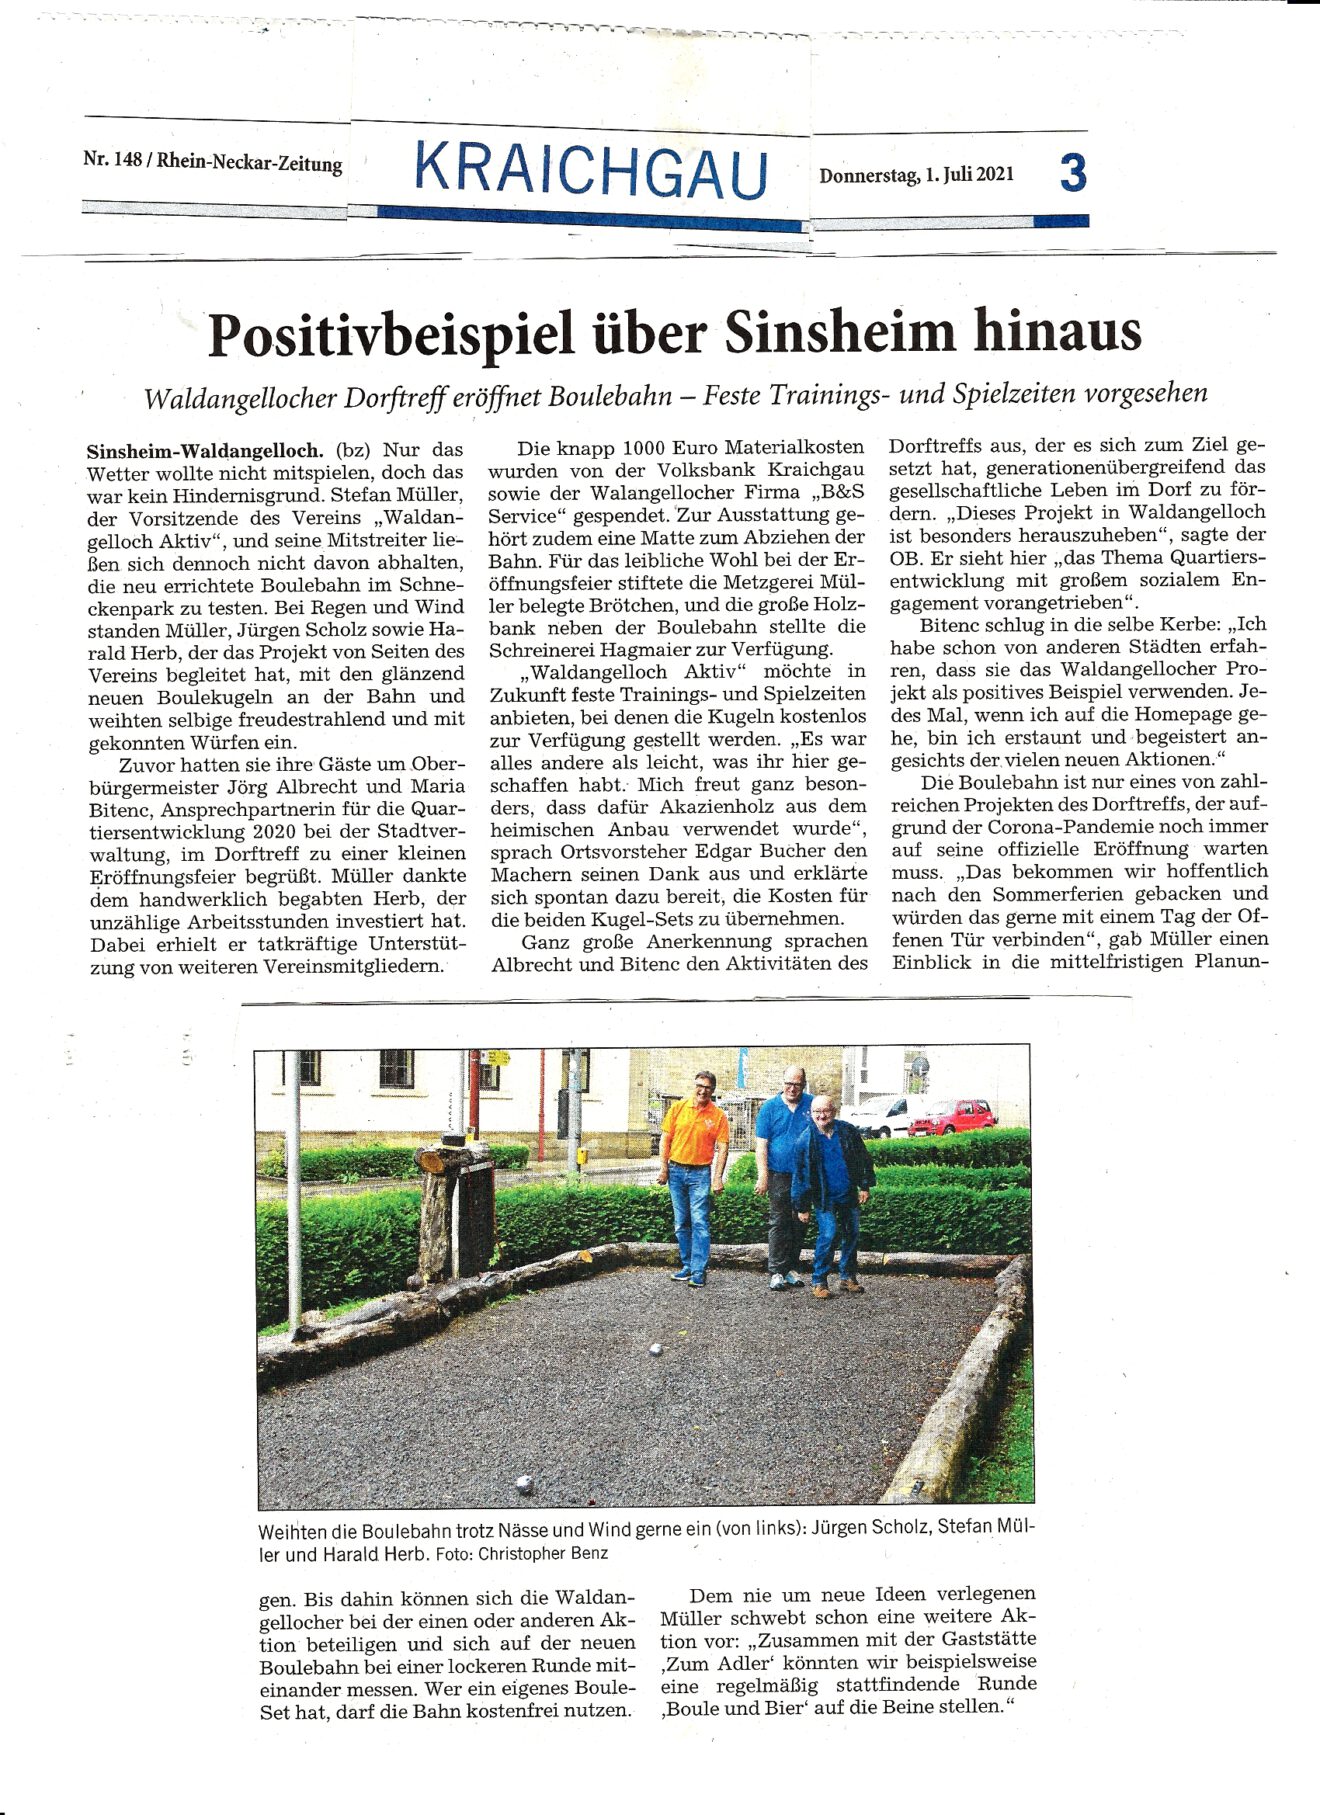 RNZ: Positivbeispiel über Sinsheim hinaus